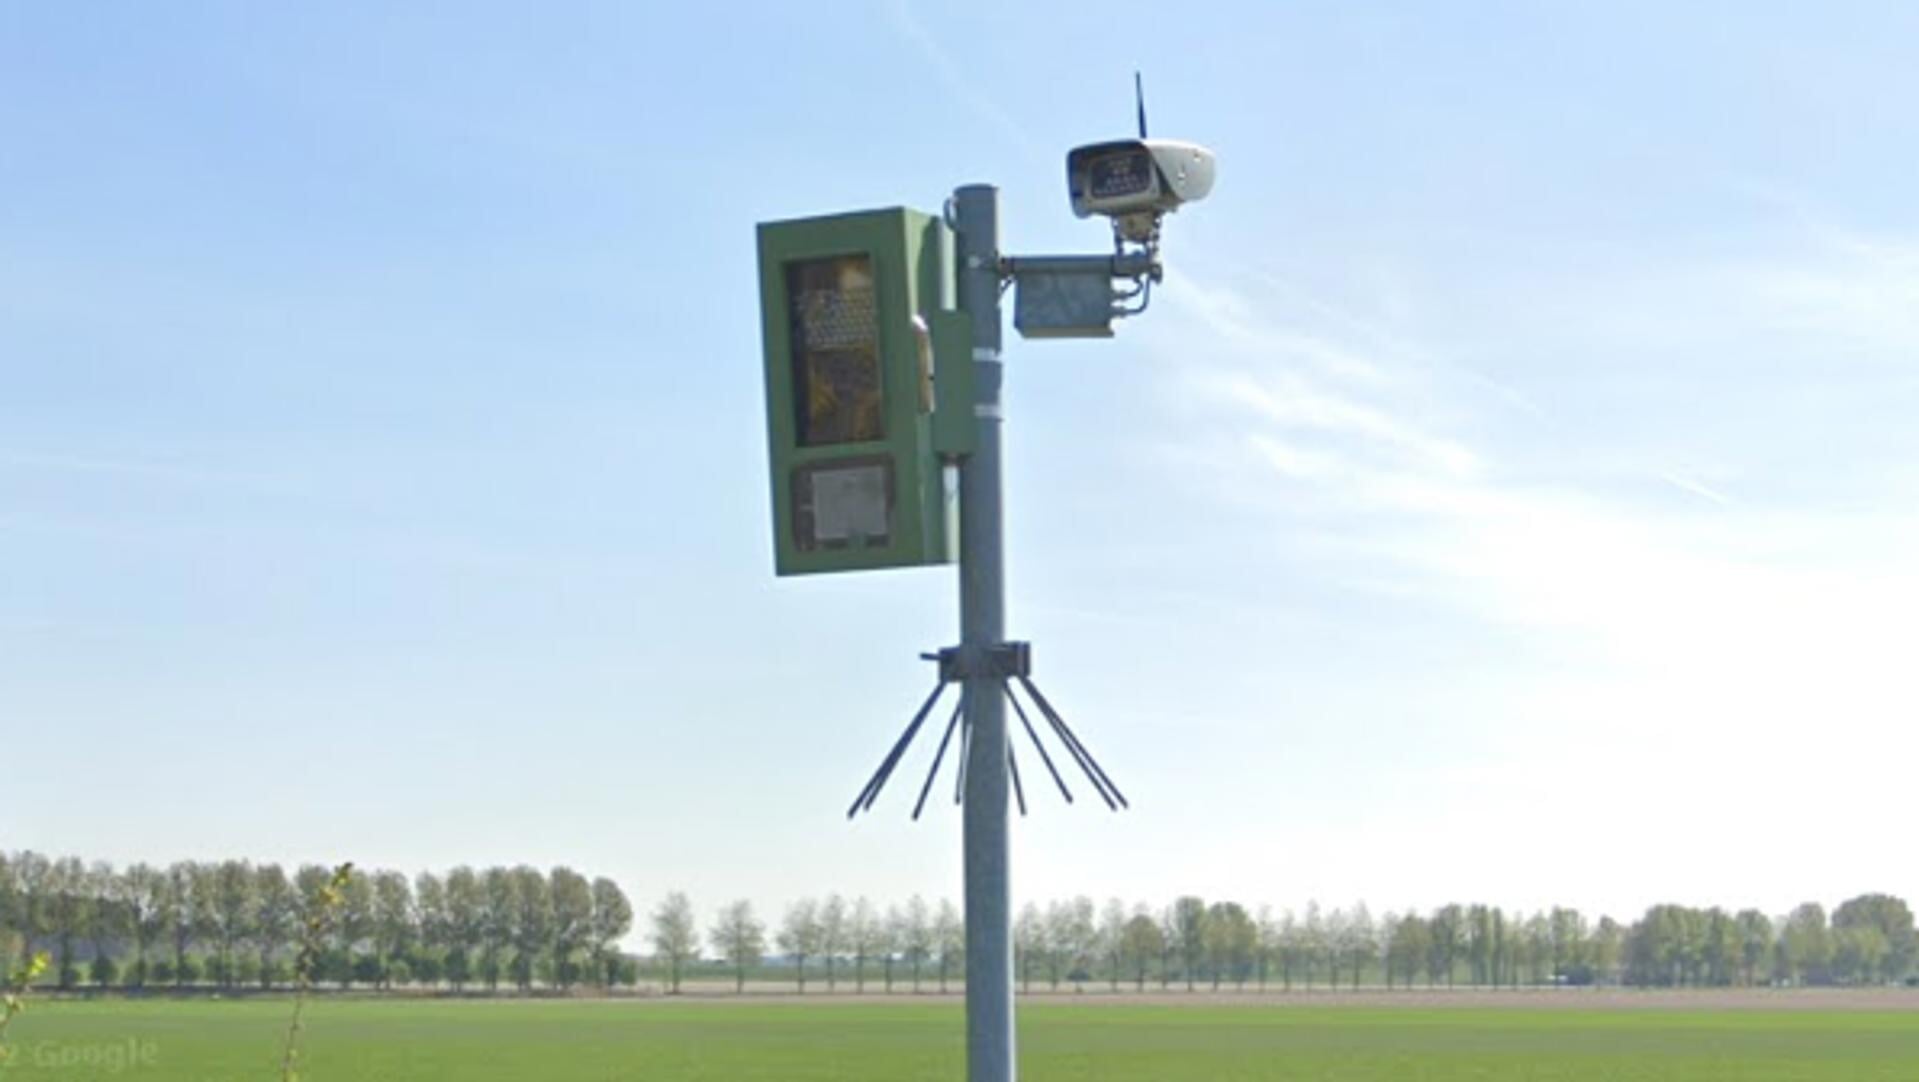 De flitspaal met ANPR-camera aan de Oud-Vossemeersedijk.